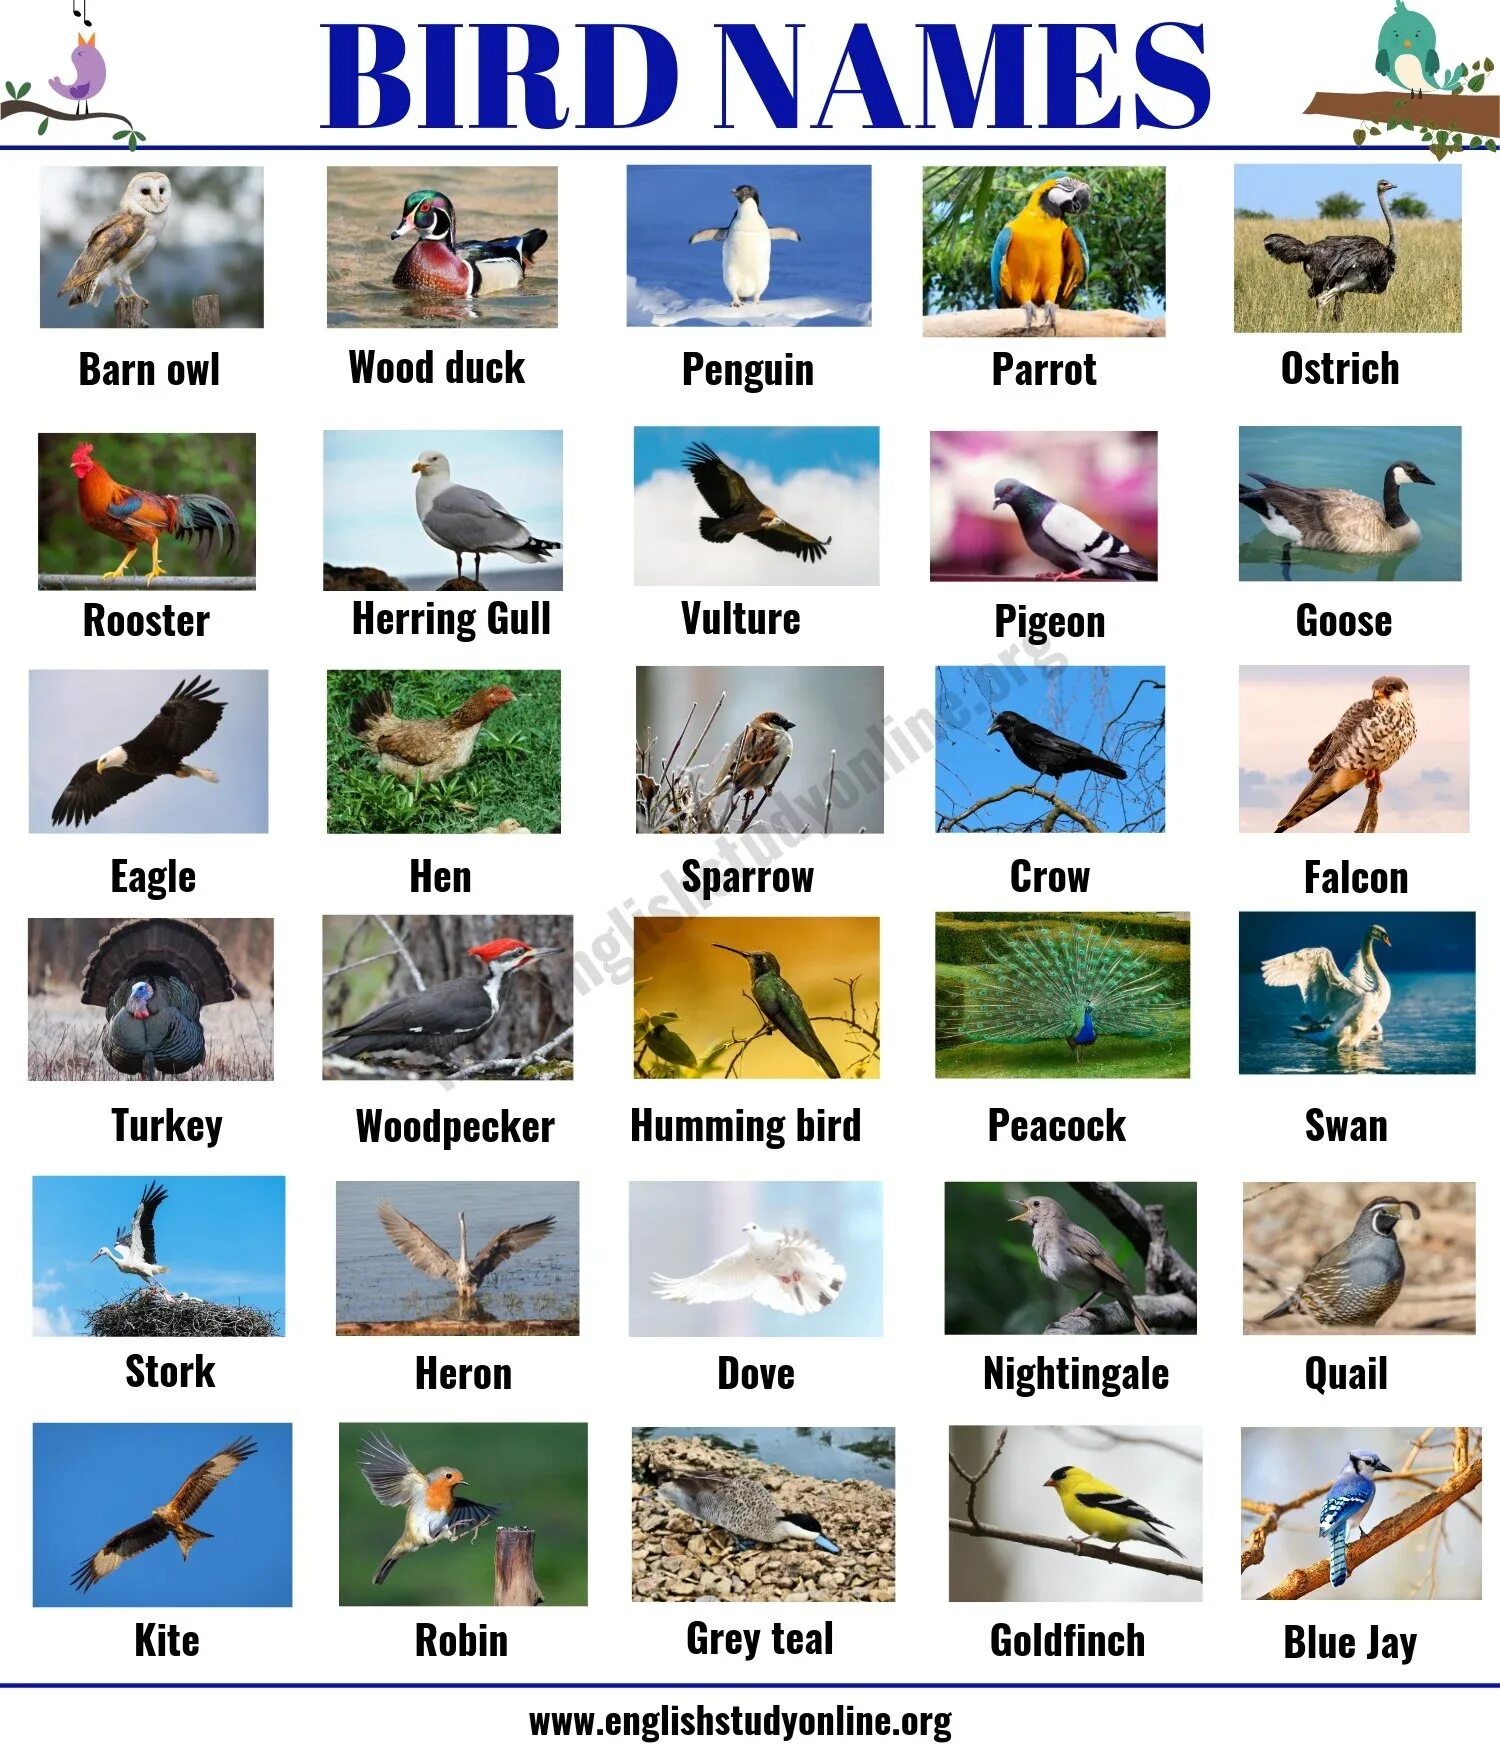 Перевести птиц на английский. Птицы на английском. Виды птиц на английском языке. Названия птиц на англи. Птицы на английском для детей.